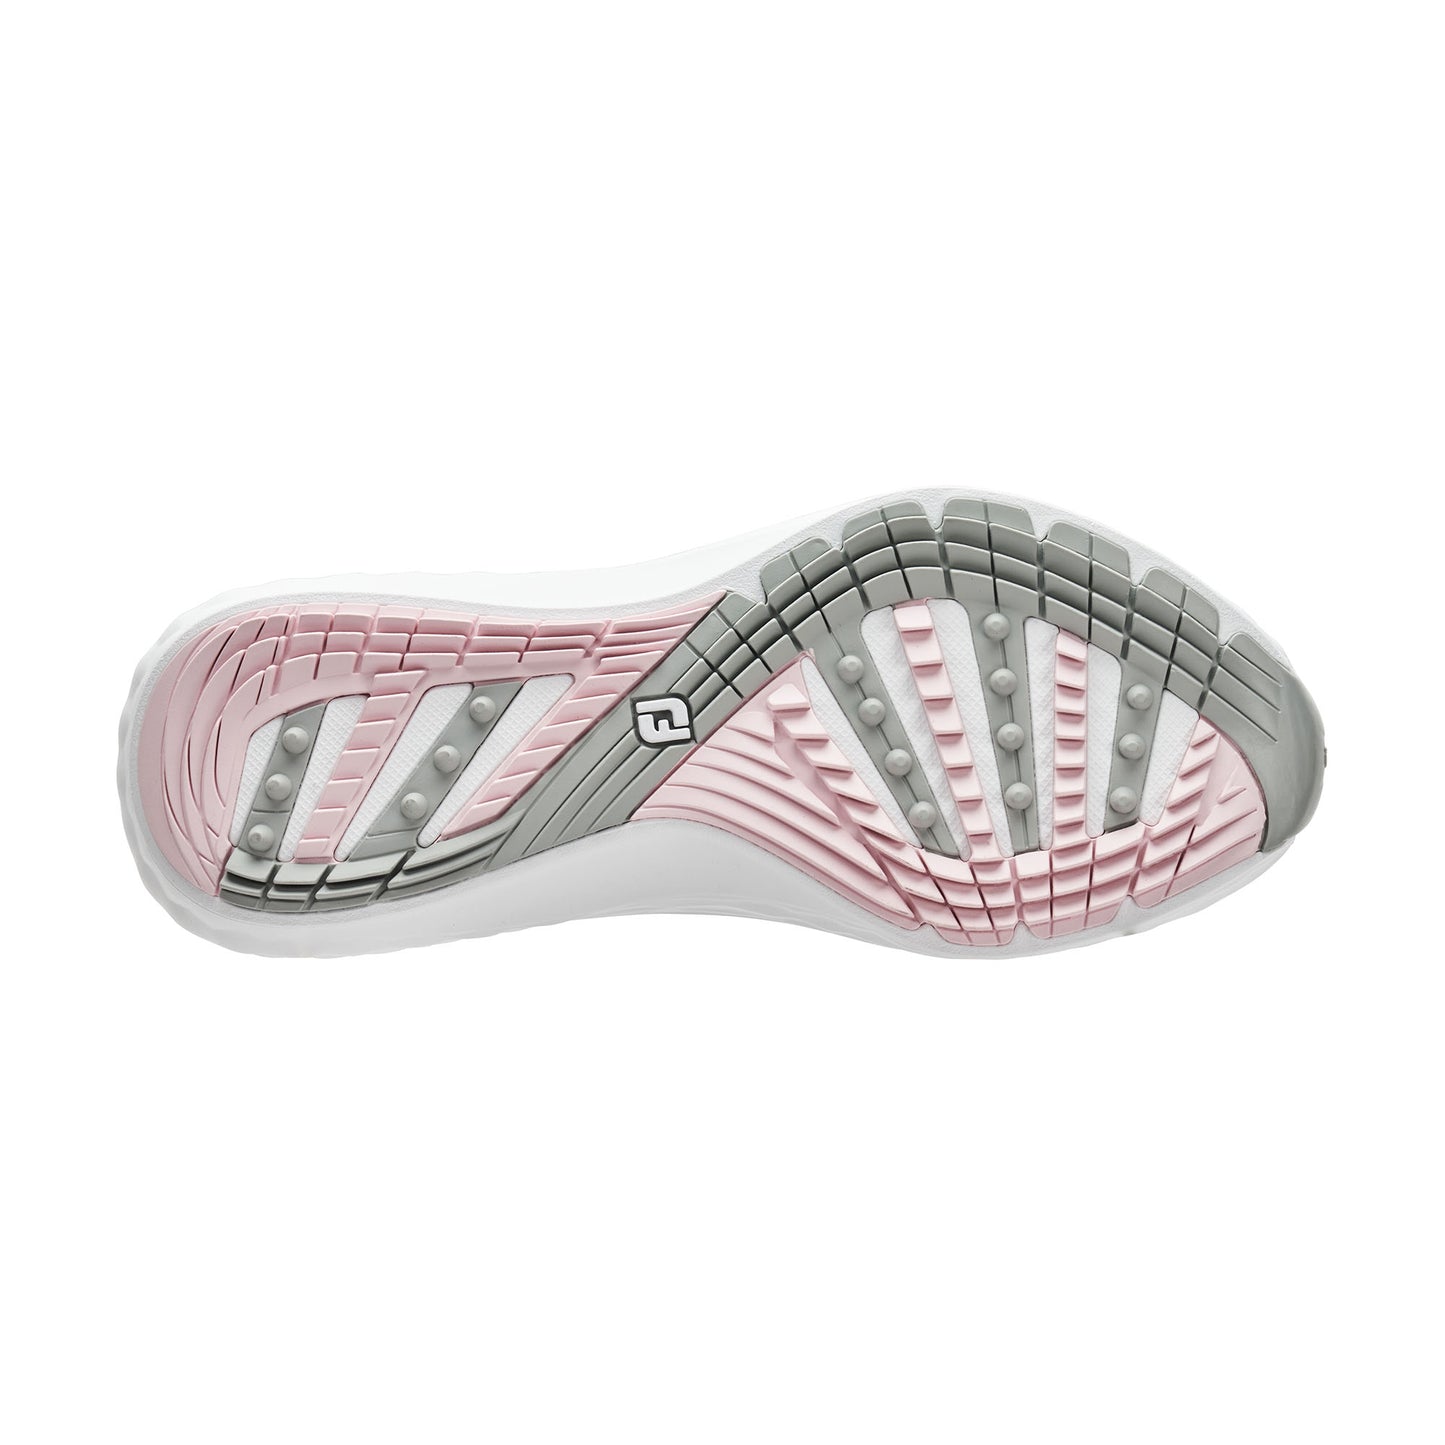 FootJoy Ladies Wide Fit Waterproof Quantum Golf Shoes in White, Grey & Pink